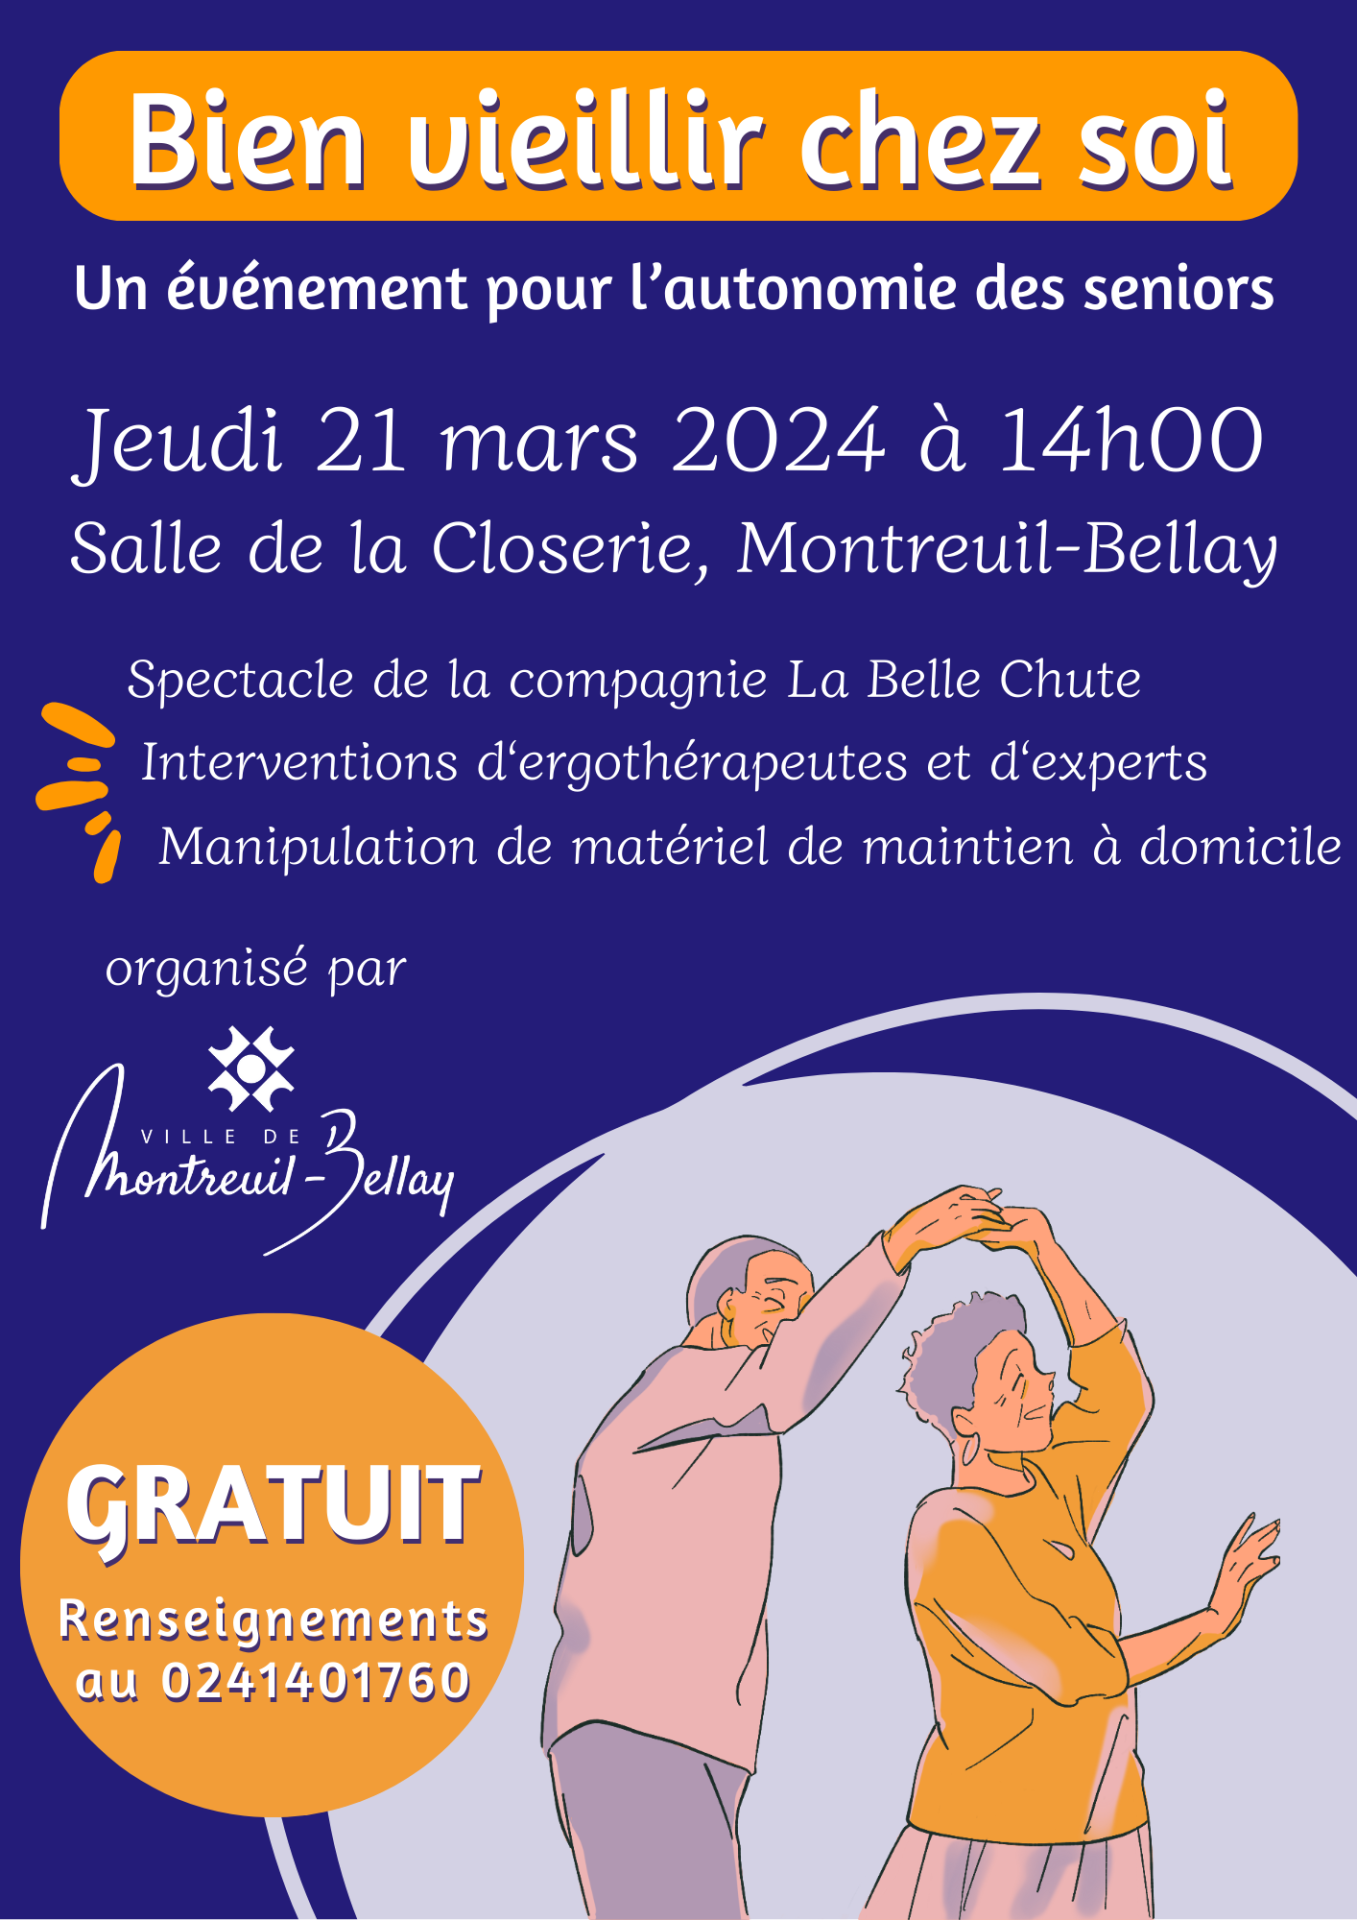 ACTU : Montreuil-Bellay. Un événement pour l’autonomie des seniors organisé